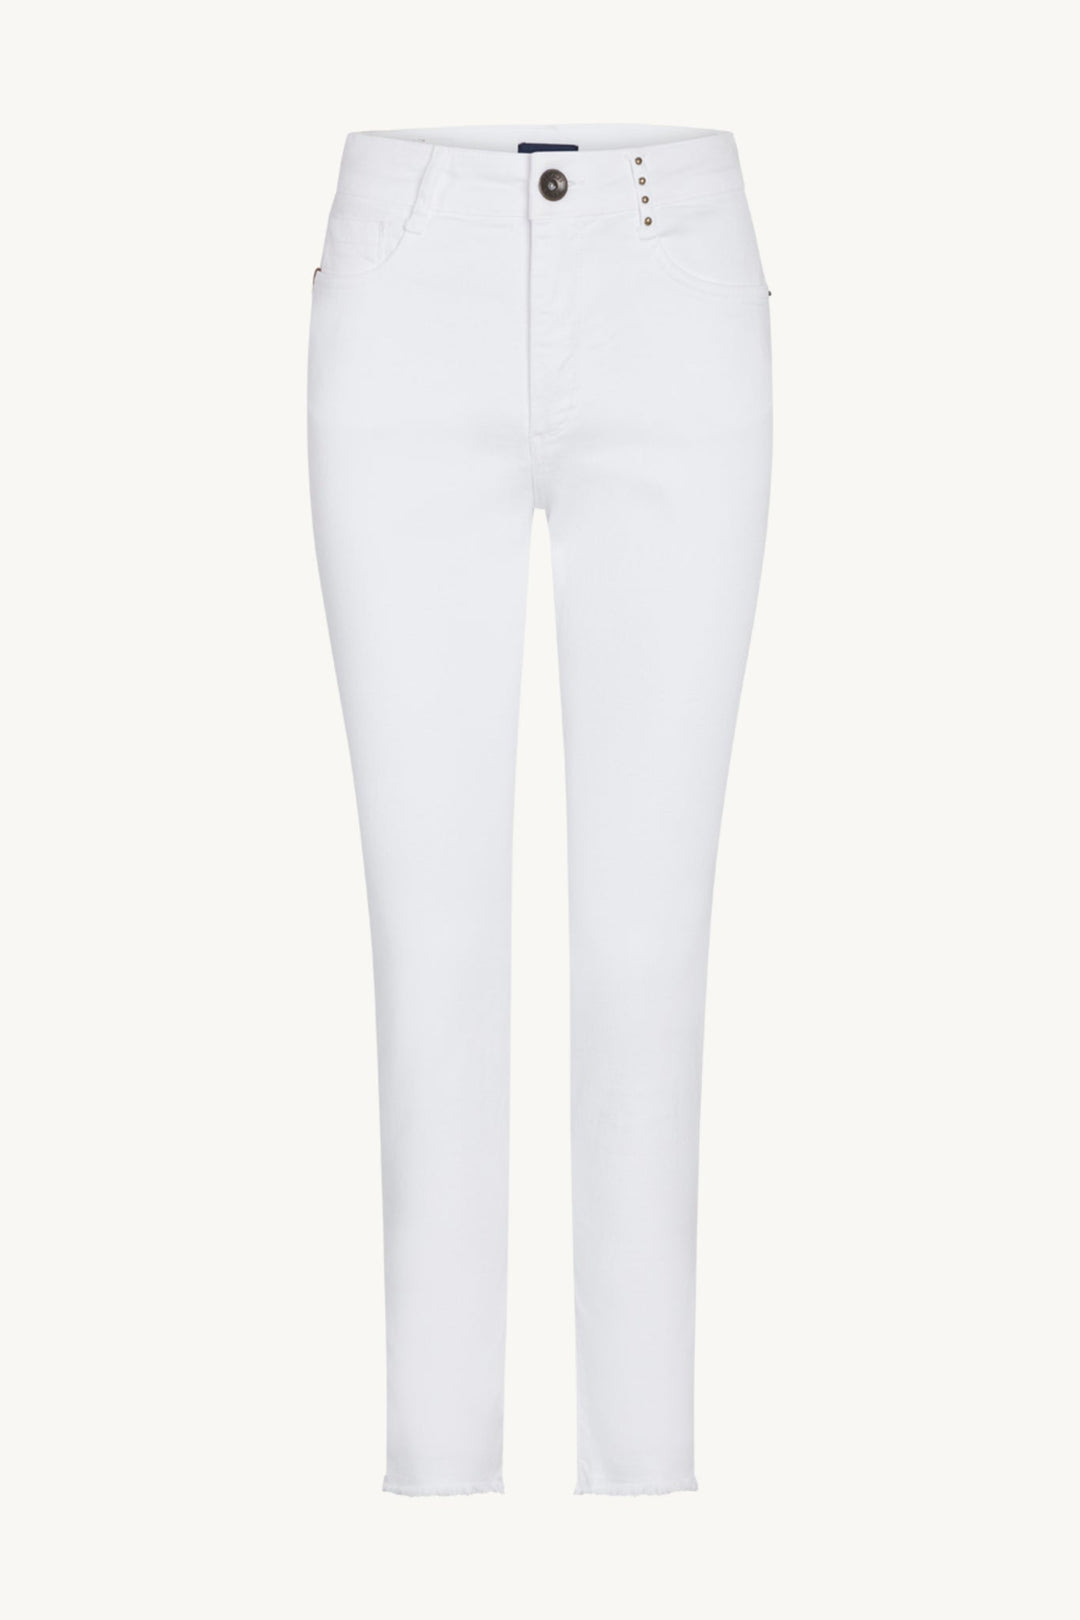 Jamie-Cw - Jeans White | Bukser | Smuk - Dameklær på nett